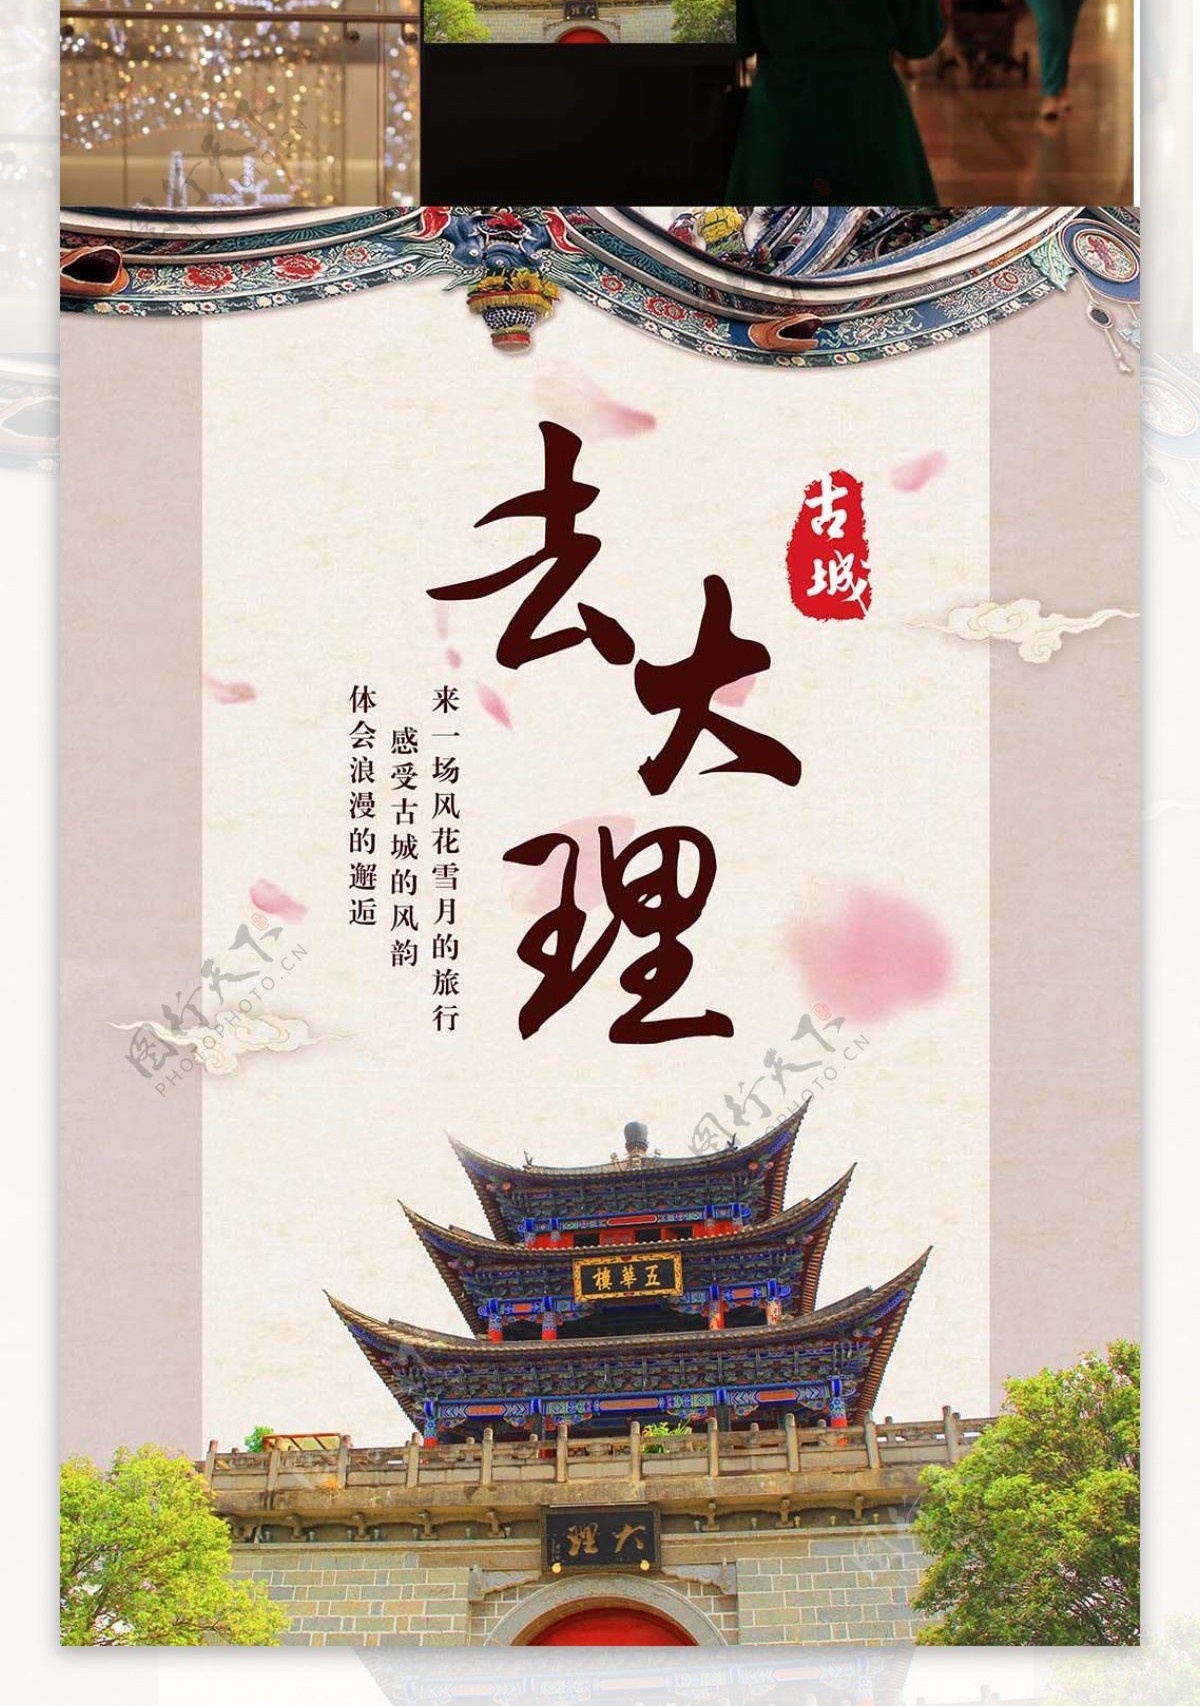 去大理古城旅游中国风旅行旅行社广告海报